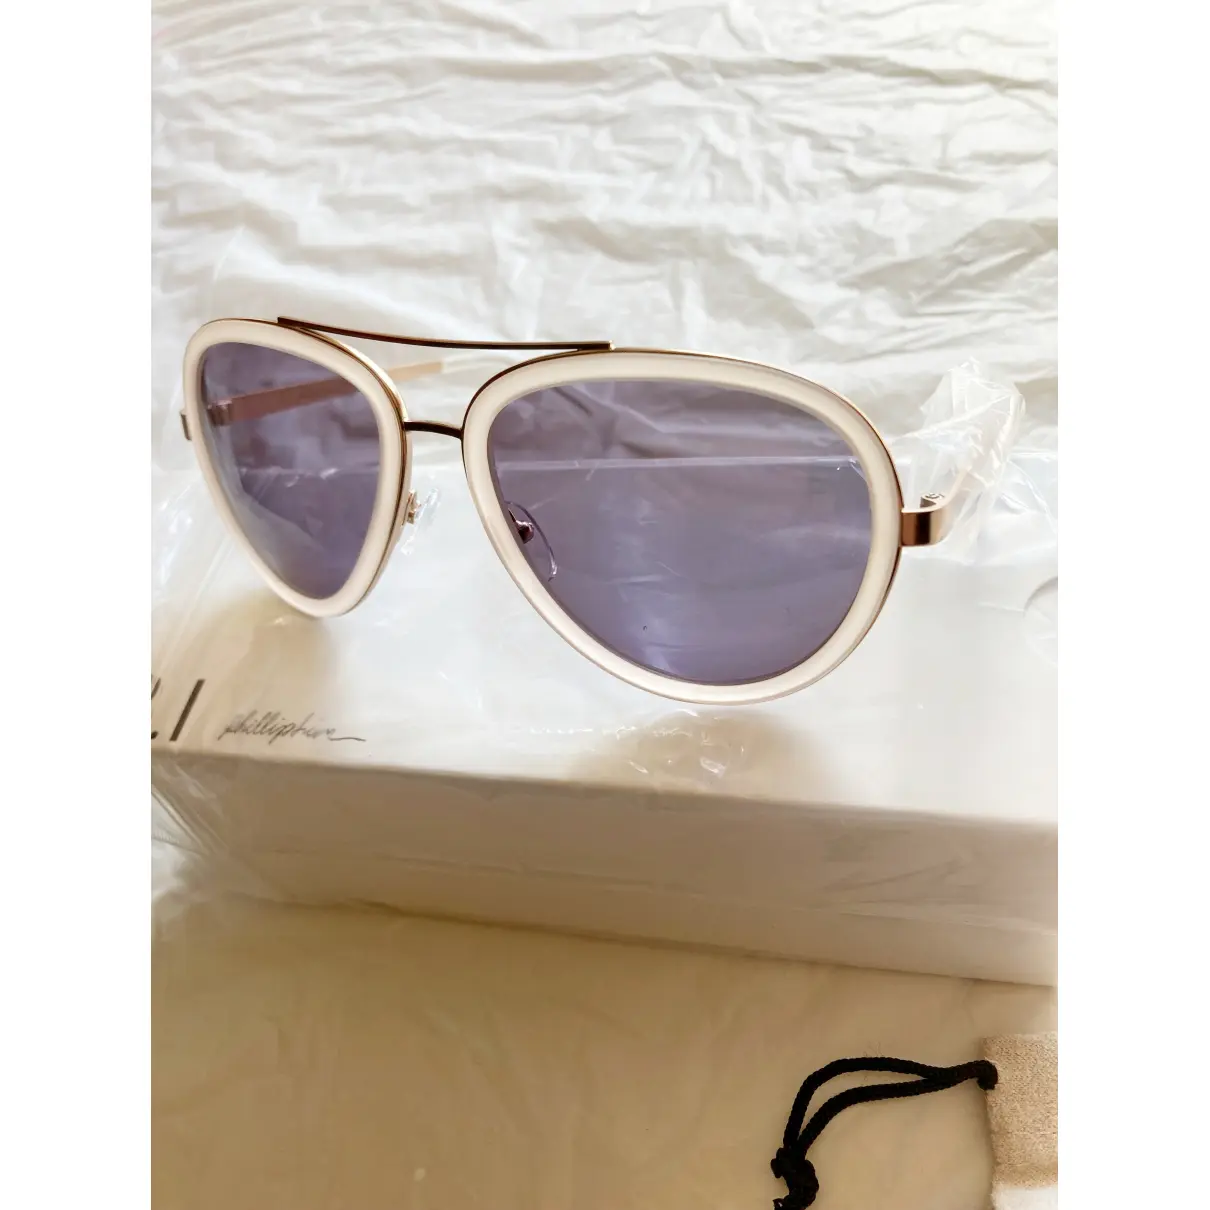 Buy 3.1 Phillip Lim Sunglasses online